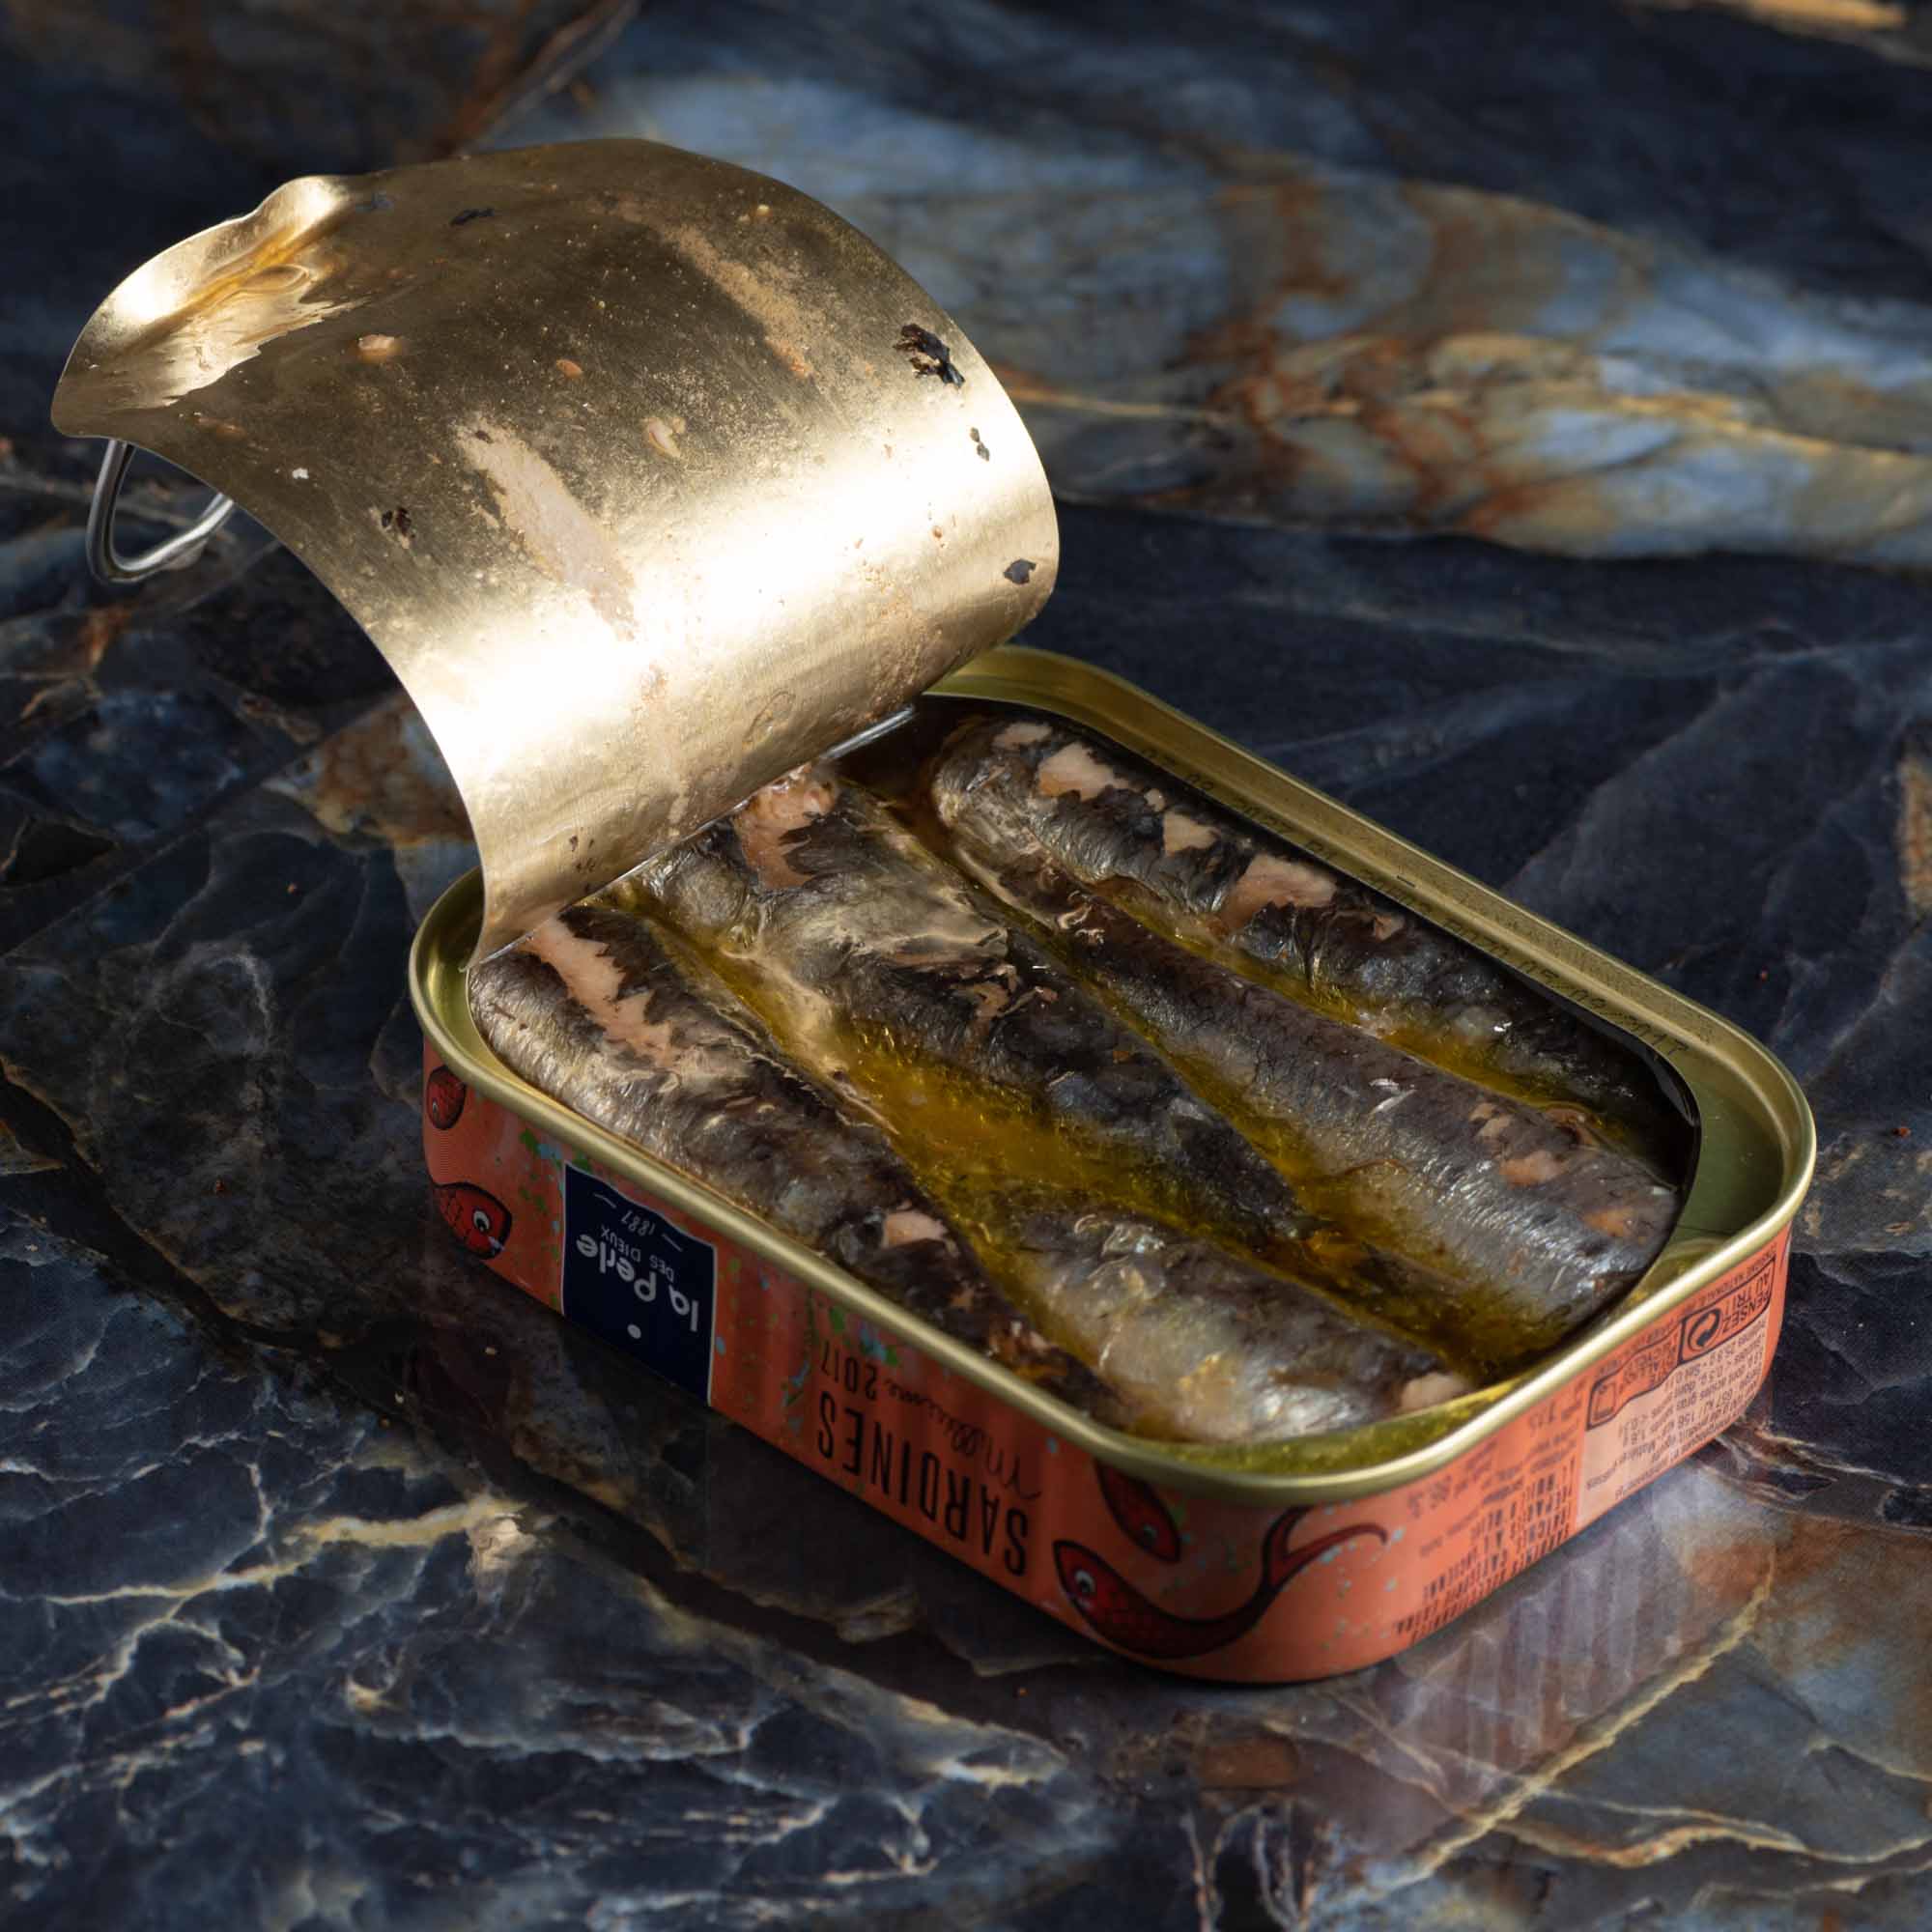 Poisson, huile, sel - c'est tout ce qu'il y a dans la boîte pour la plupart des bonnes sardines.